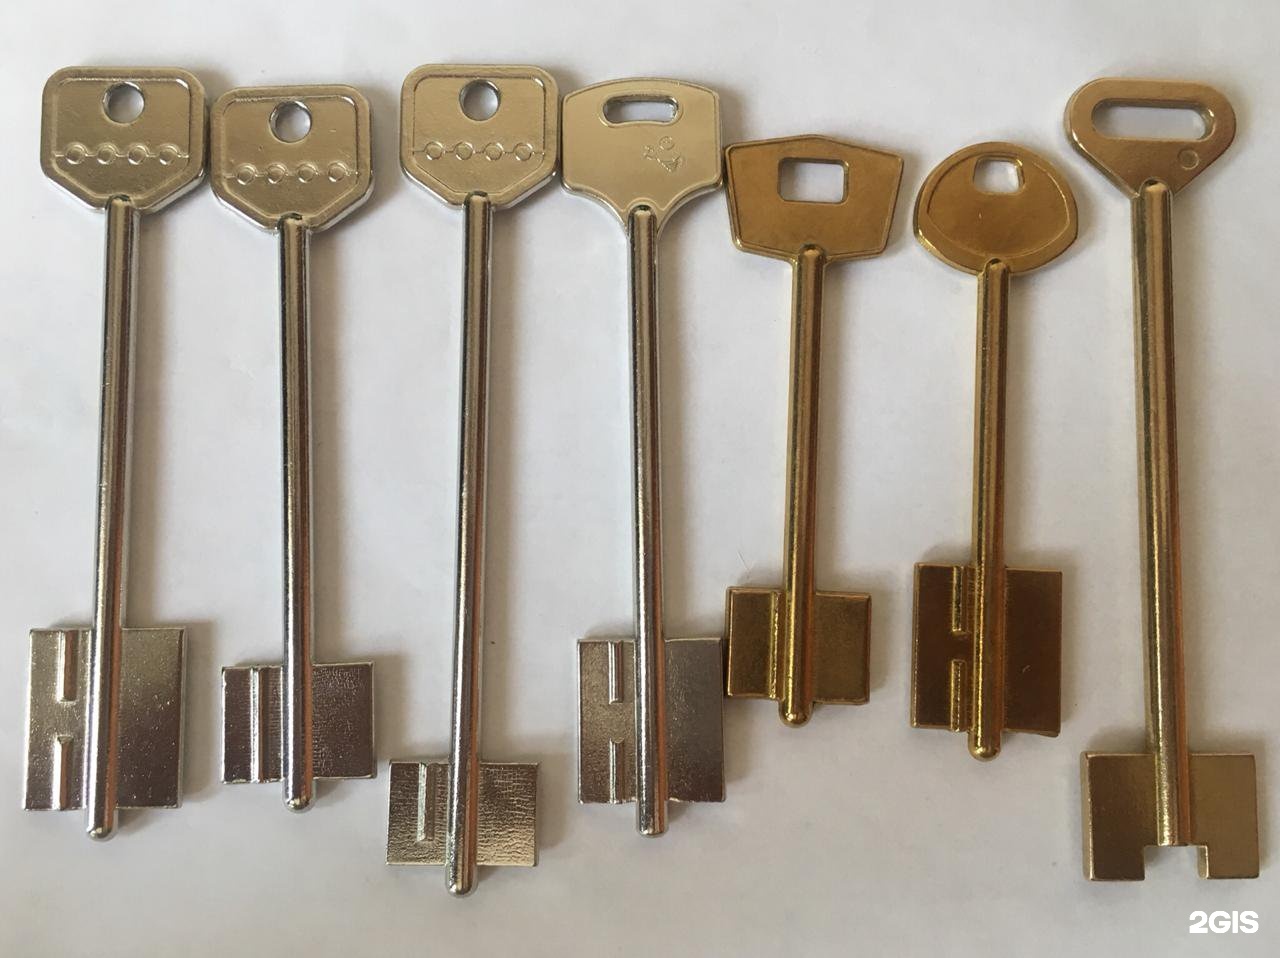 Ts keys. Инструмент ип1804. Изготовление ключей. Ключ ч-IP. Ключ ч.136-85.037.